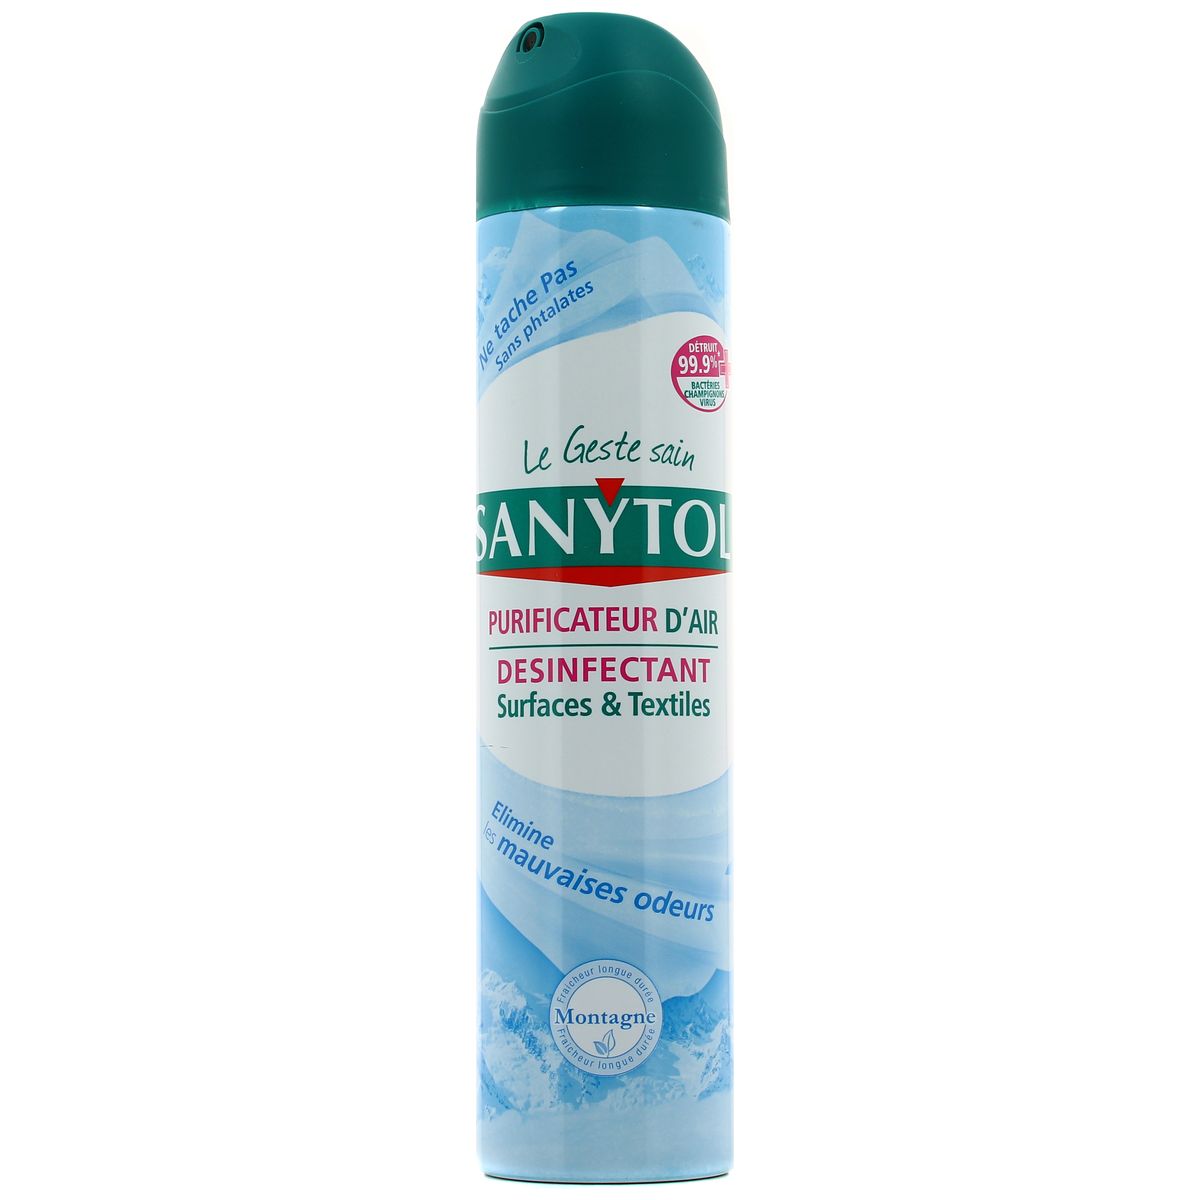 Sanytol purificateur d'air désinfectant surfaces & textiles montagne 300 ml